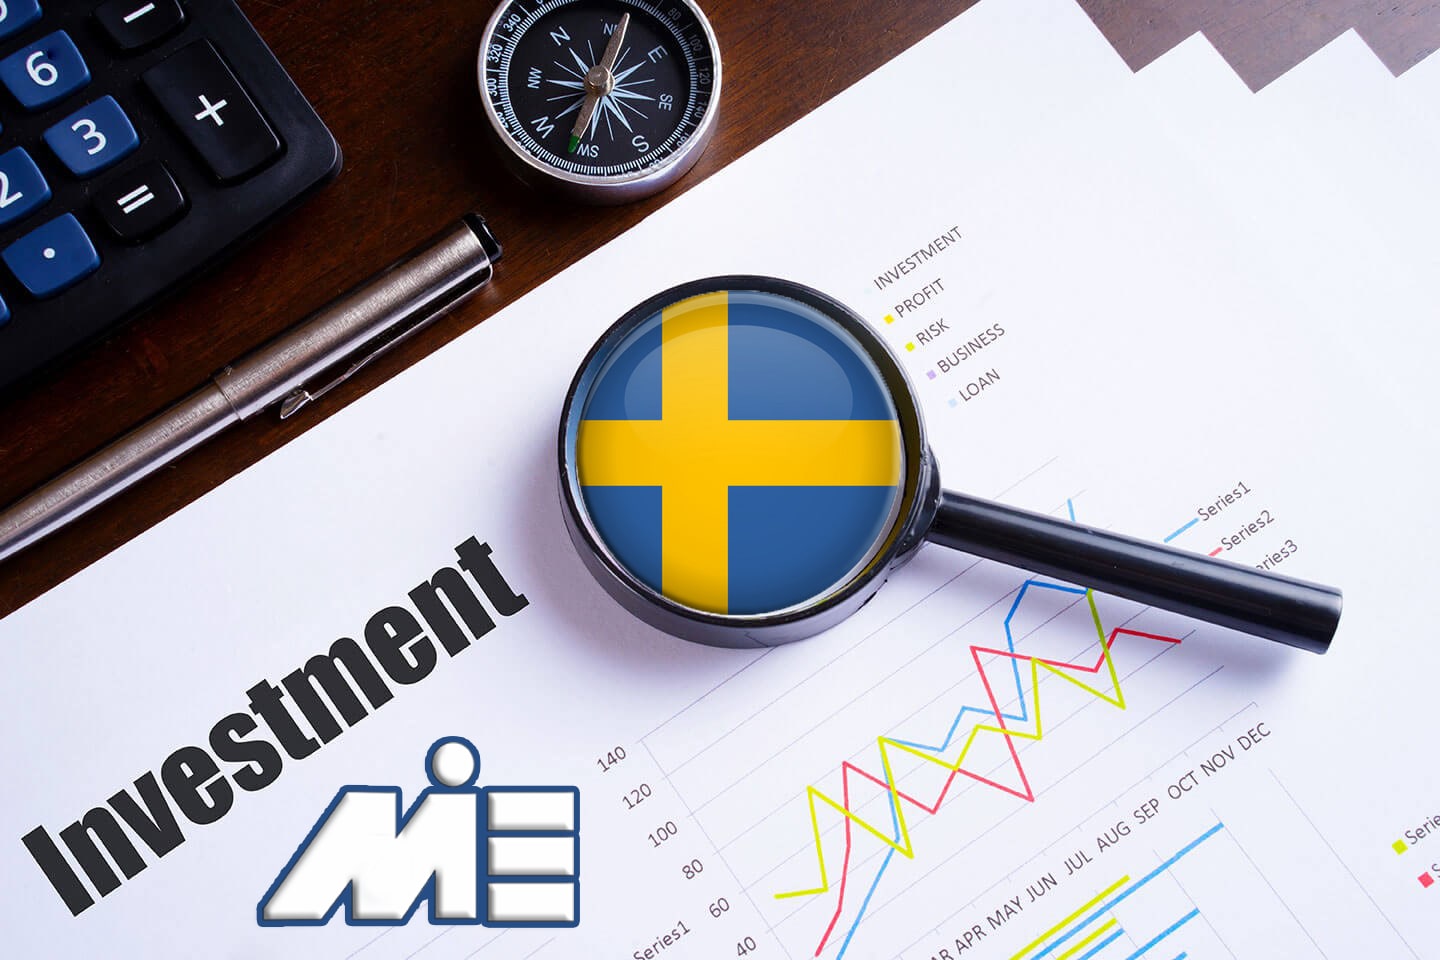 سرمایه گذاری در سوئد - مهاجرت به سوئد از طریق سرمایه گذاری